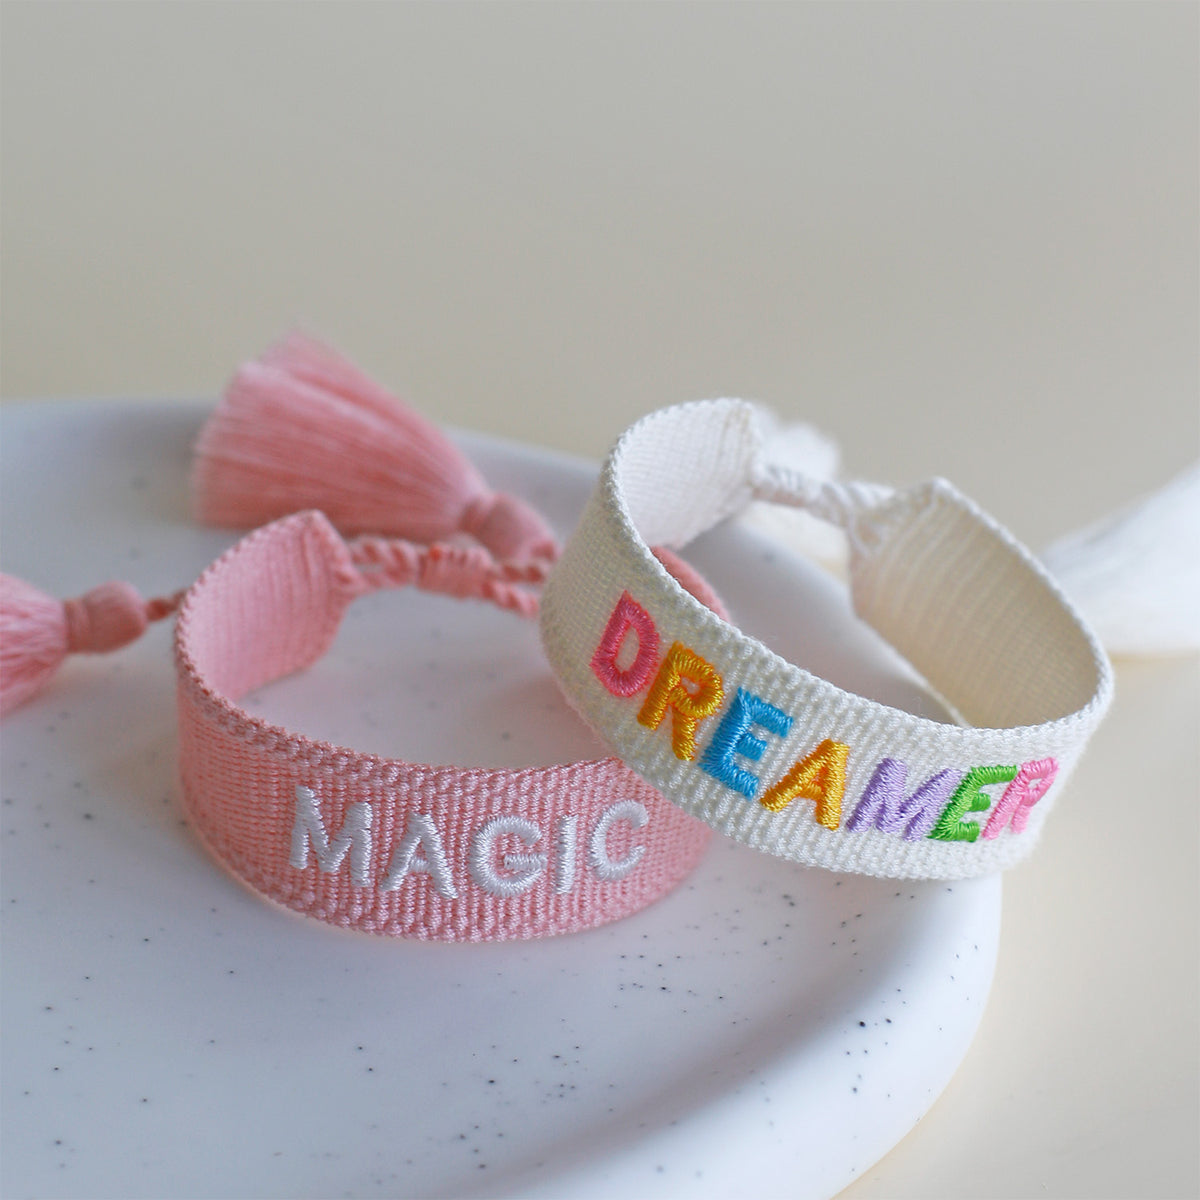 Woven Tassel Bracelet - Magic